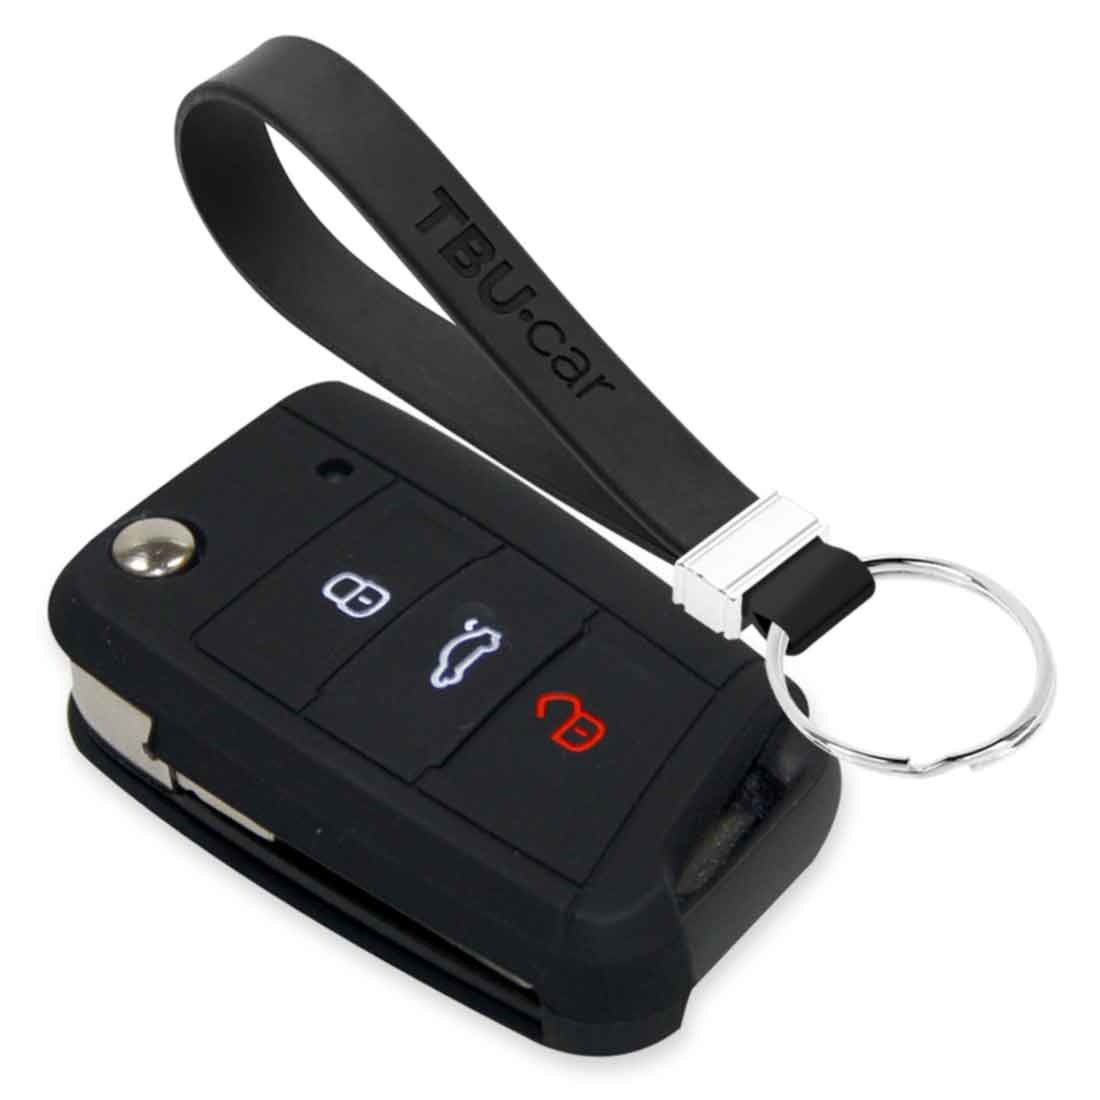 TPU Autoschlüssel Hülle Abdeckung + Schlüsselanhänger passt für